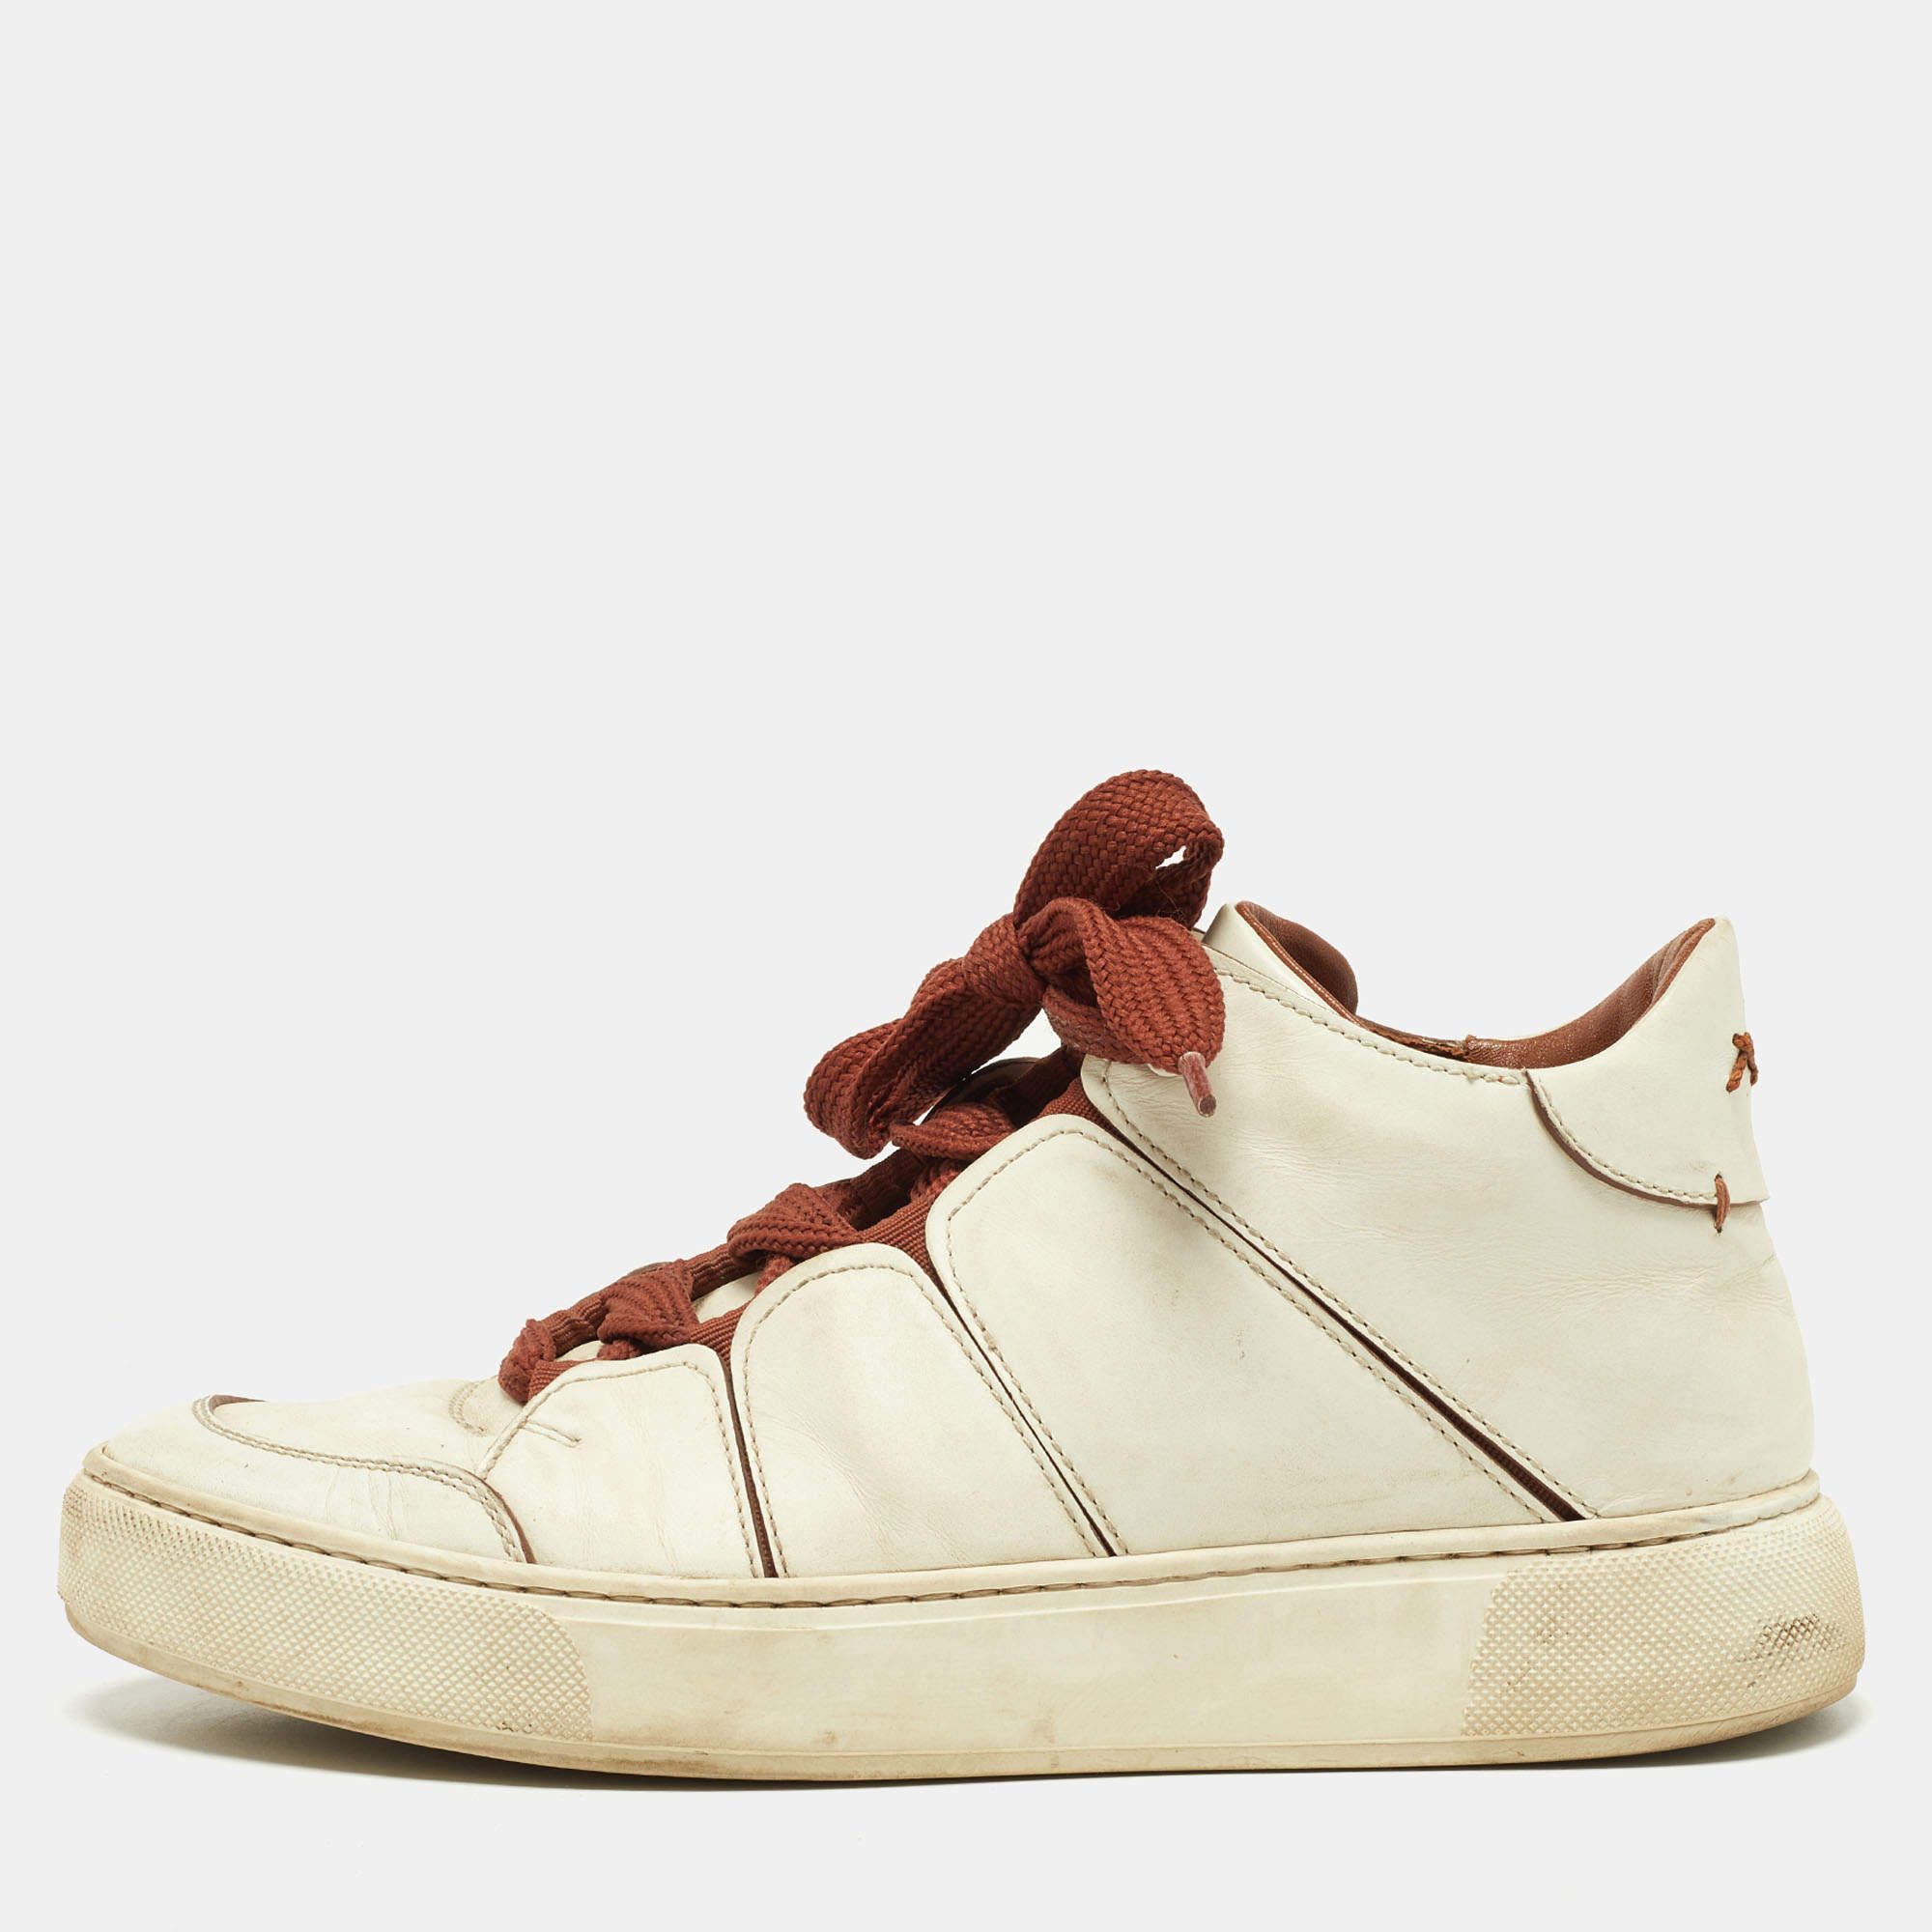 Ermenegildo Zegna Off White/Brown Leather Tiziano Sneakers Size 41